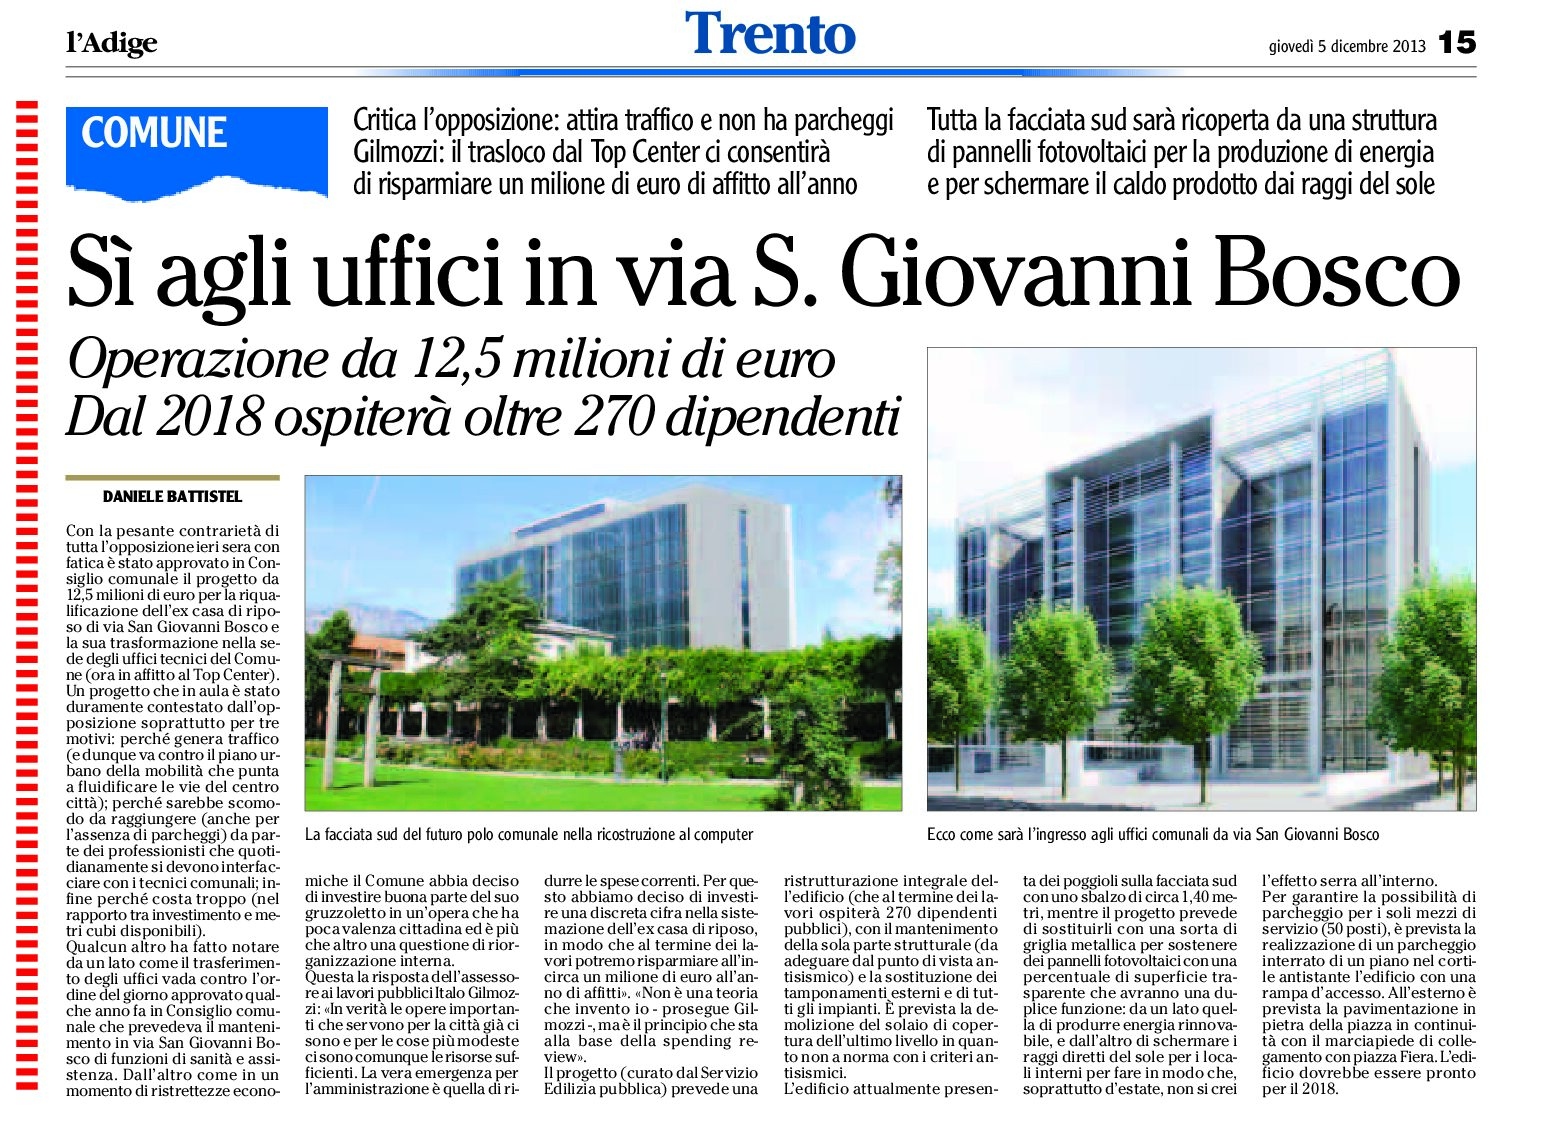 Trento: sì agli uffici del Comune in via S. Giovanni Bosco